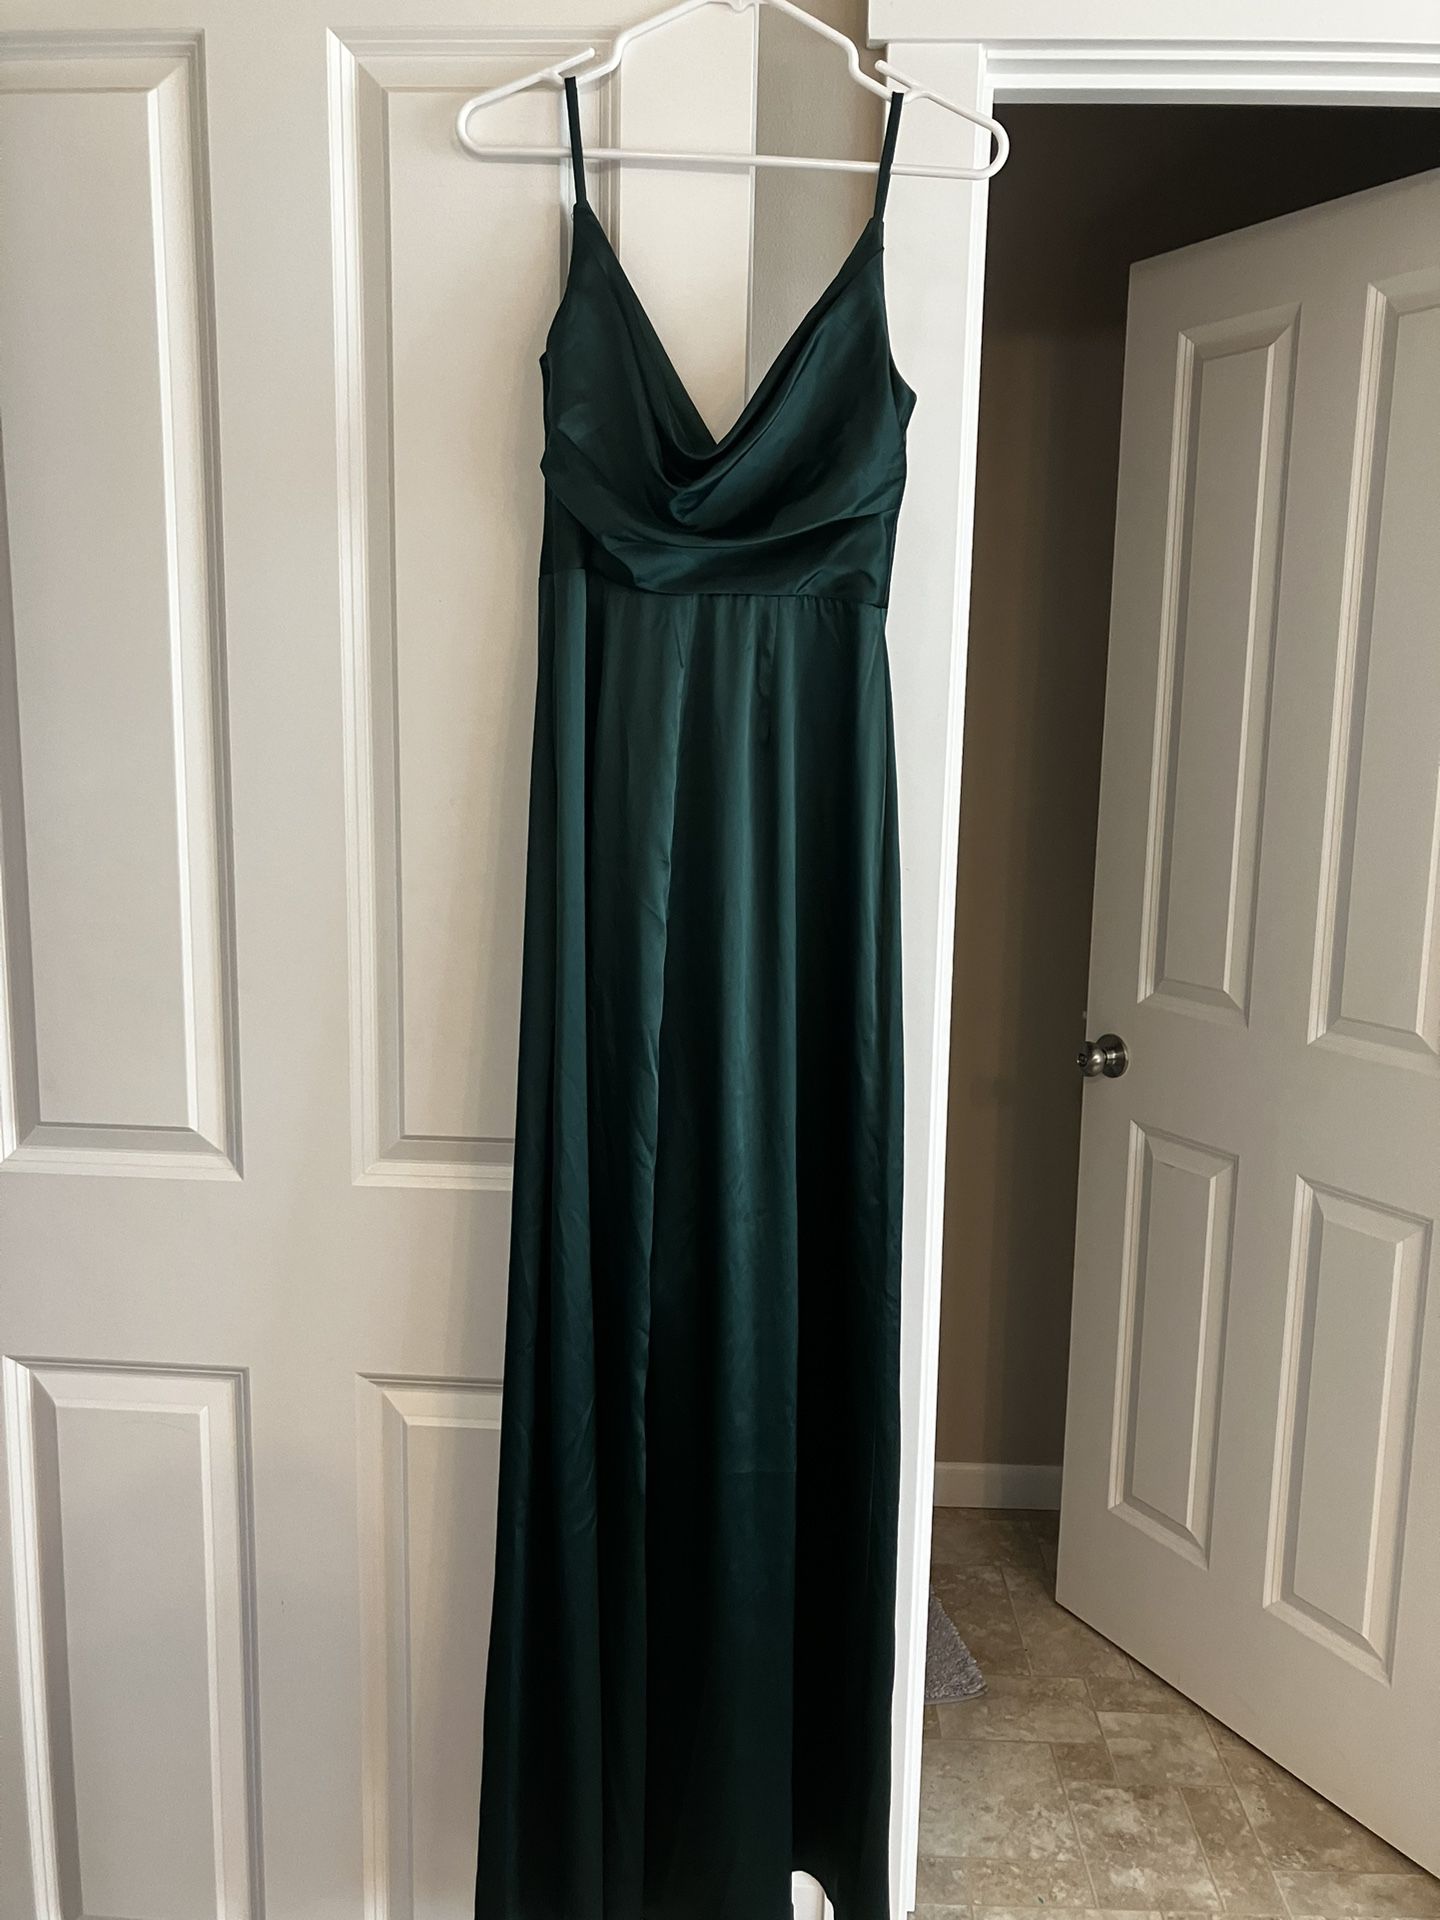 Satin Hunter Green Prom Dress - $50